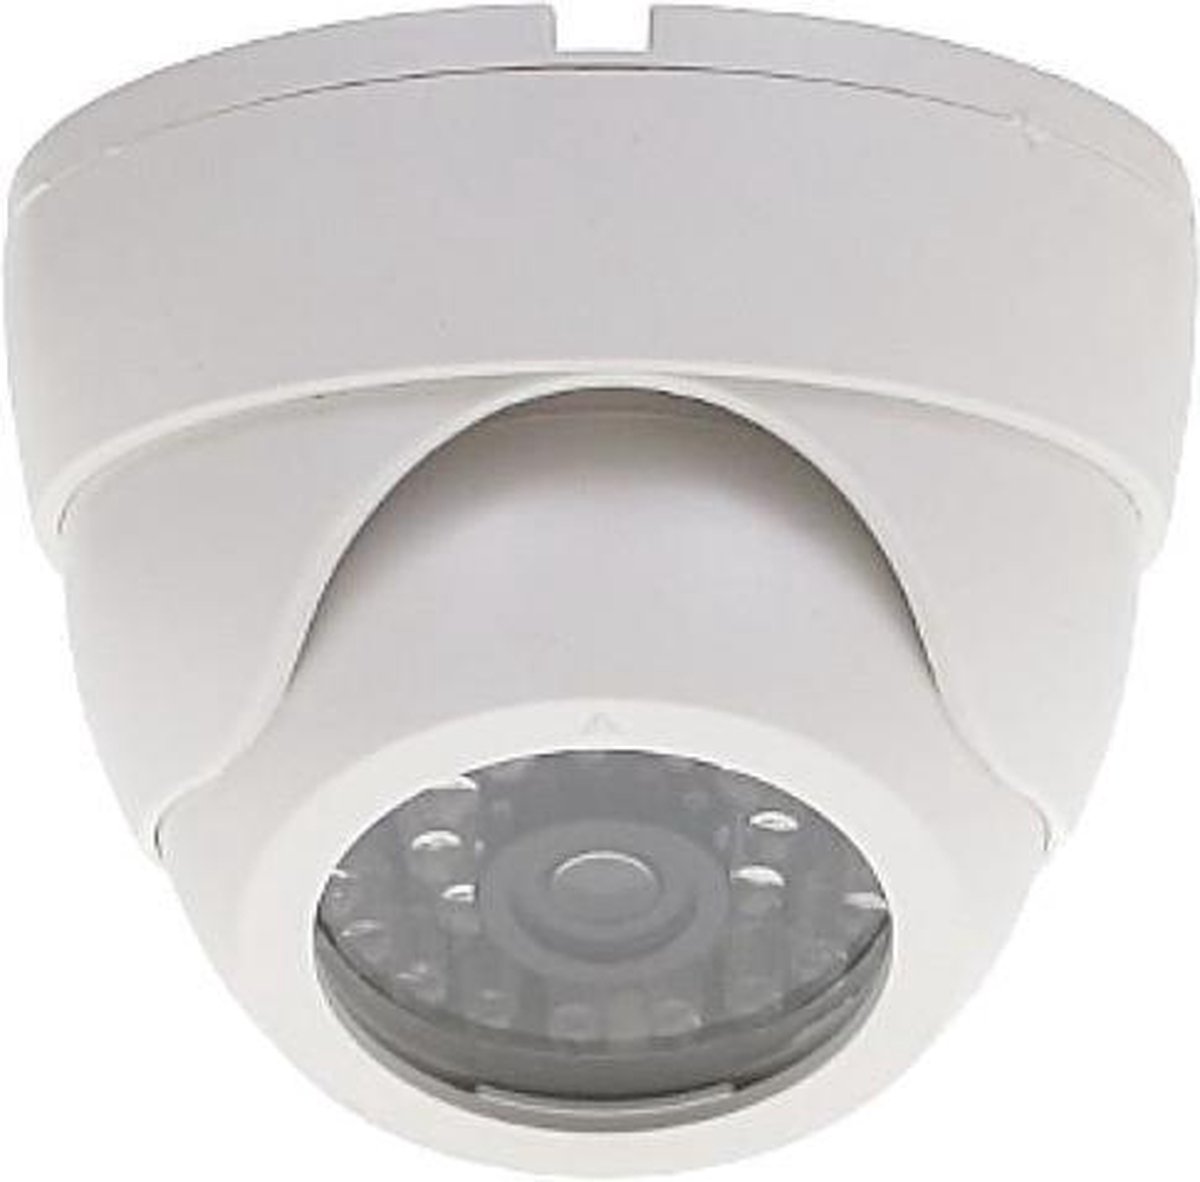 WL4 EDI-LED-W realistische dummy beveiligingscamera voor binnen met knipperende LED - Beveiligingscamera IP camera bewakingscamera camerabewaking veiligheidscamera beveiliging netwerk camera webcam